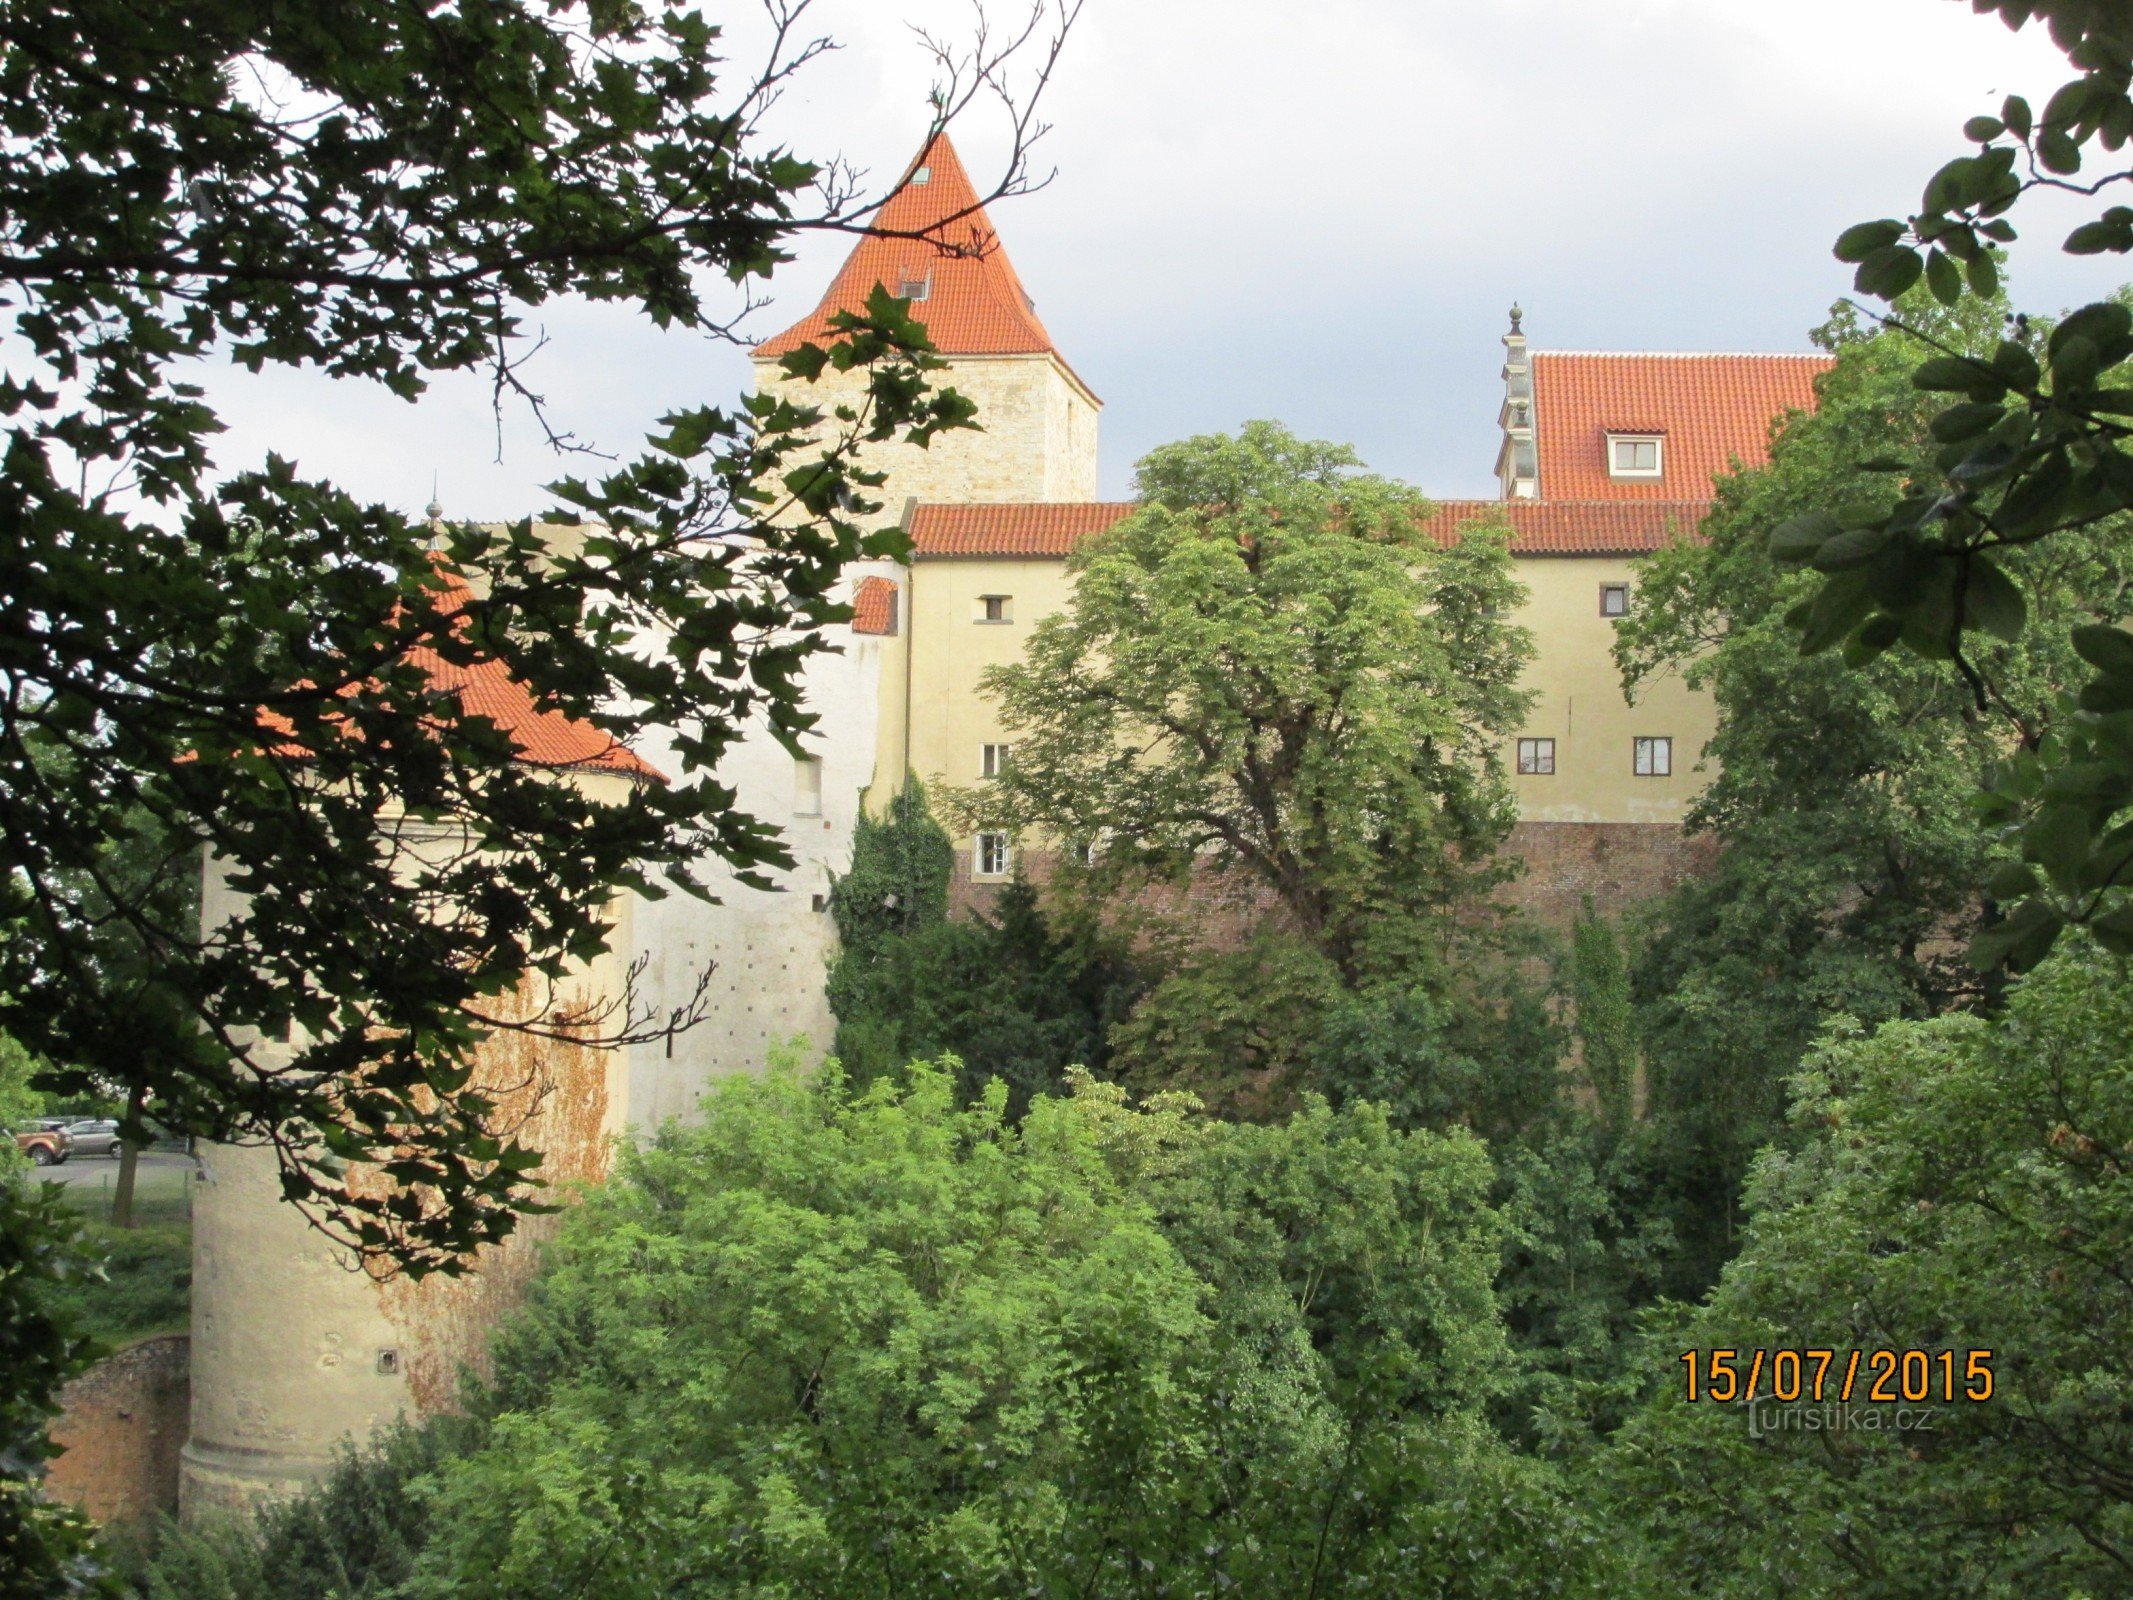 Early evening walk through the castle garden to Prague Castle